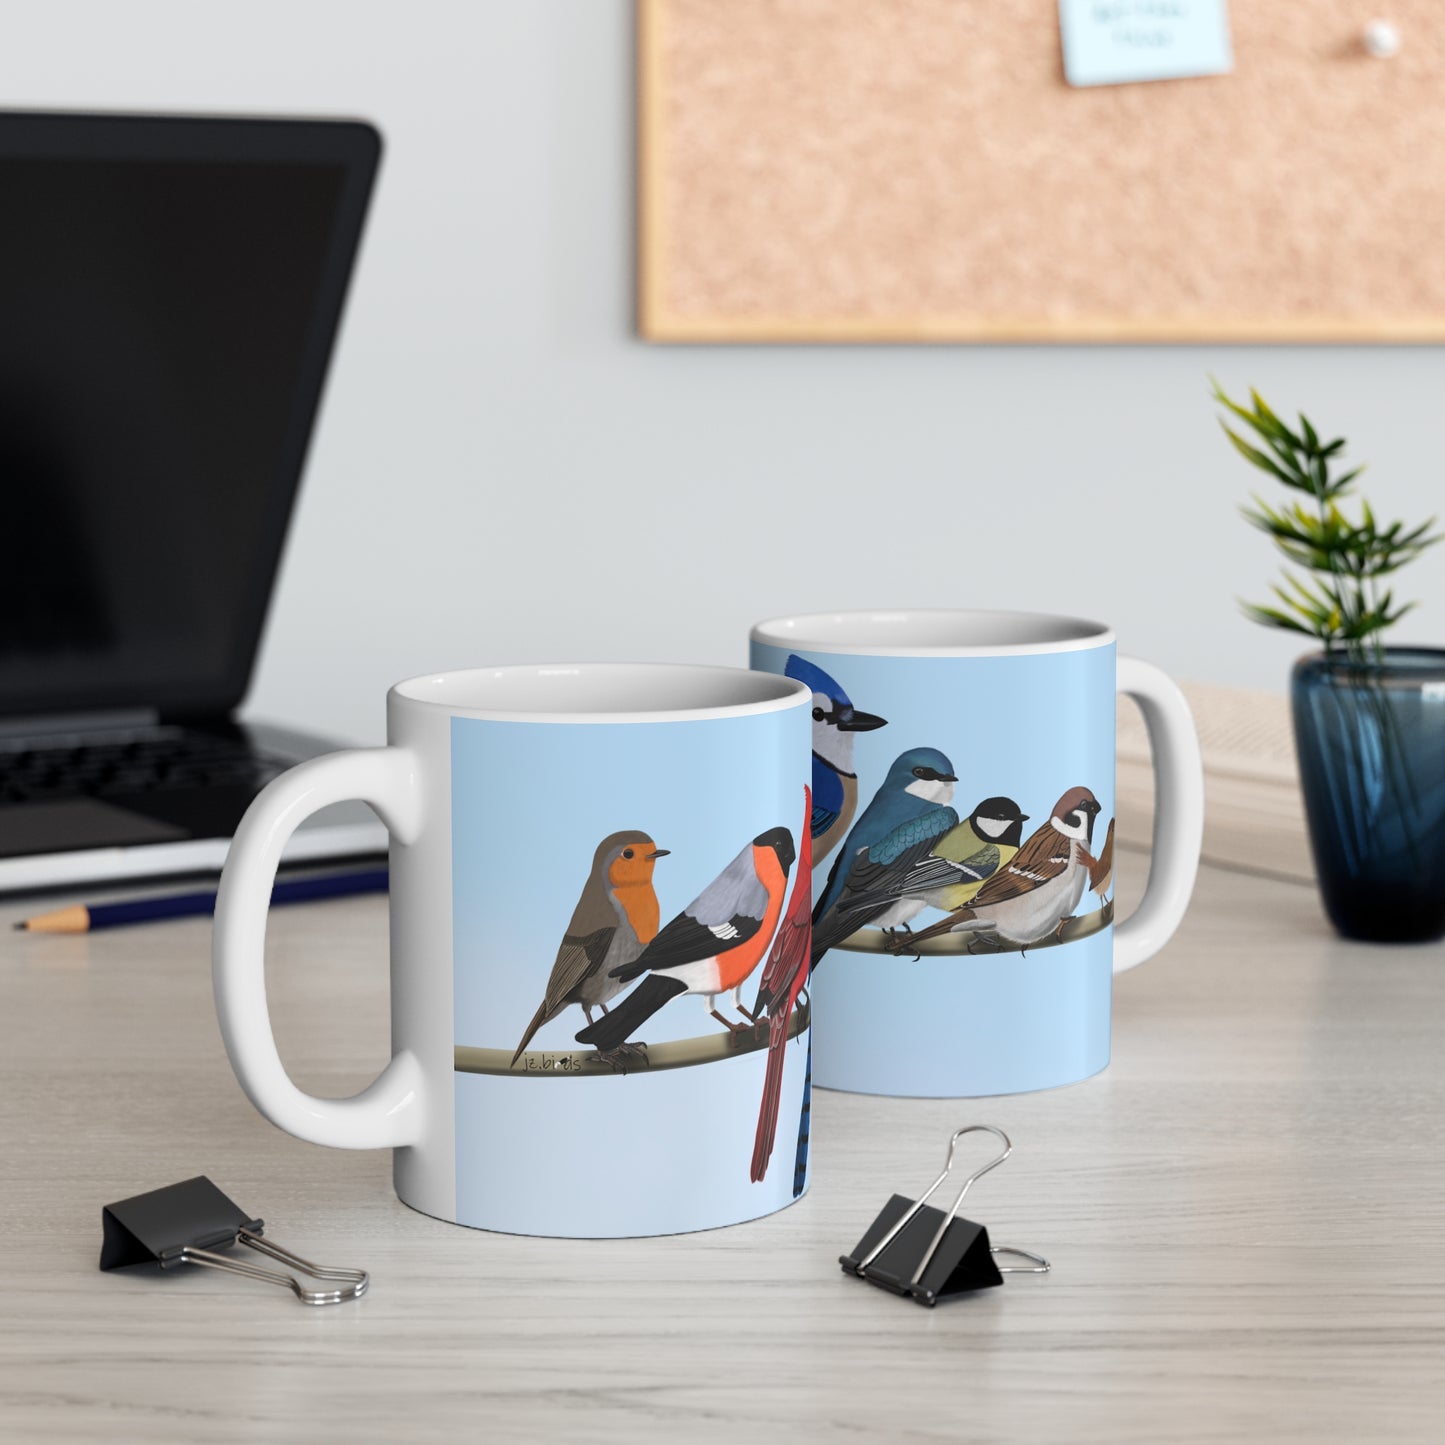 Garden Birds on a Branch Ceramic Mug 11oz